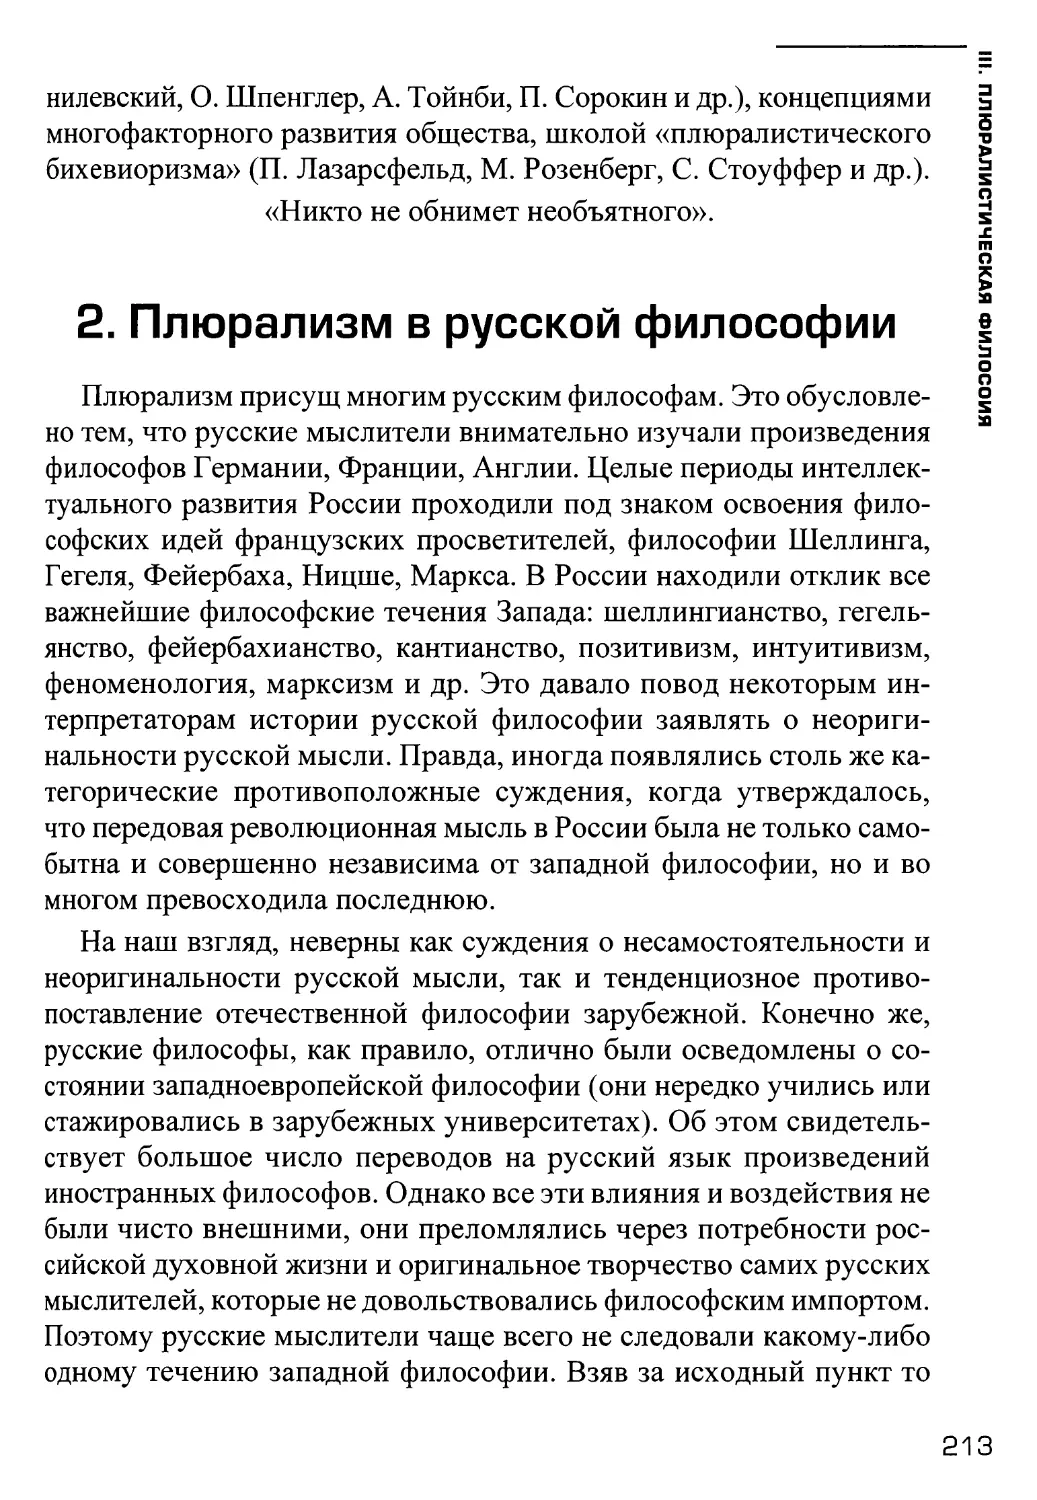 2. Плюрализм в русской философии